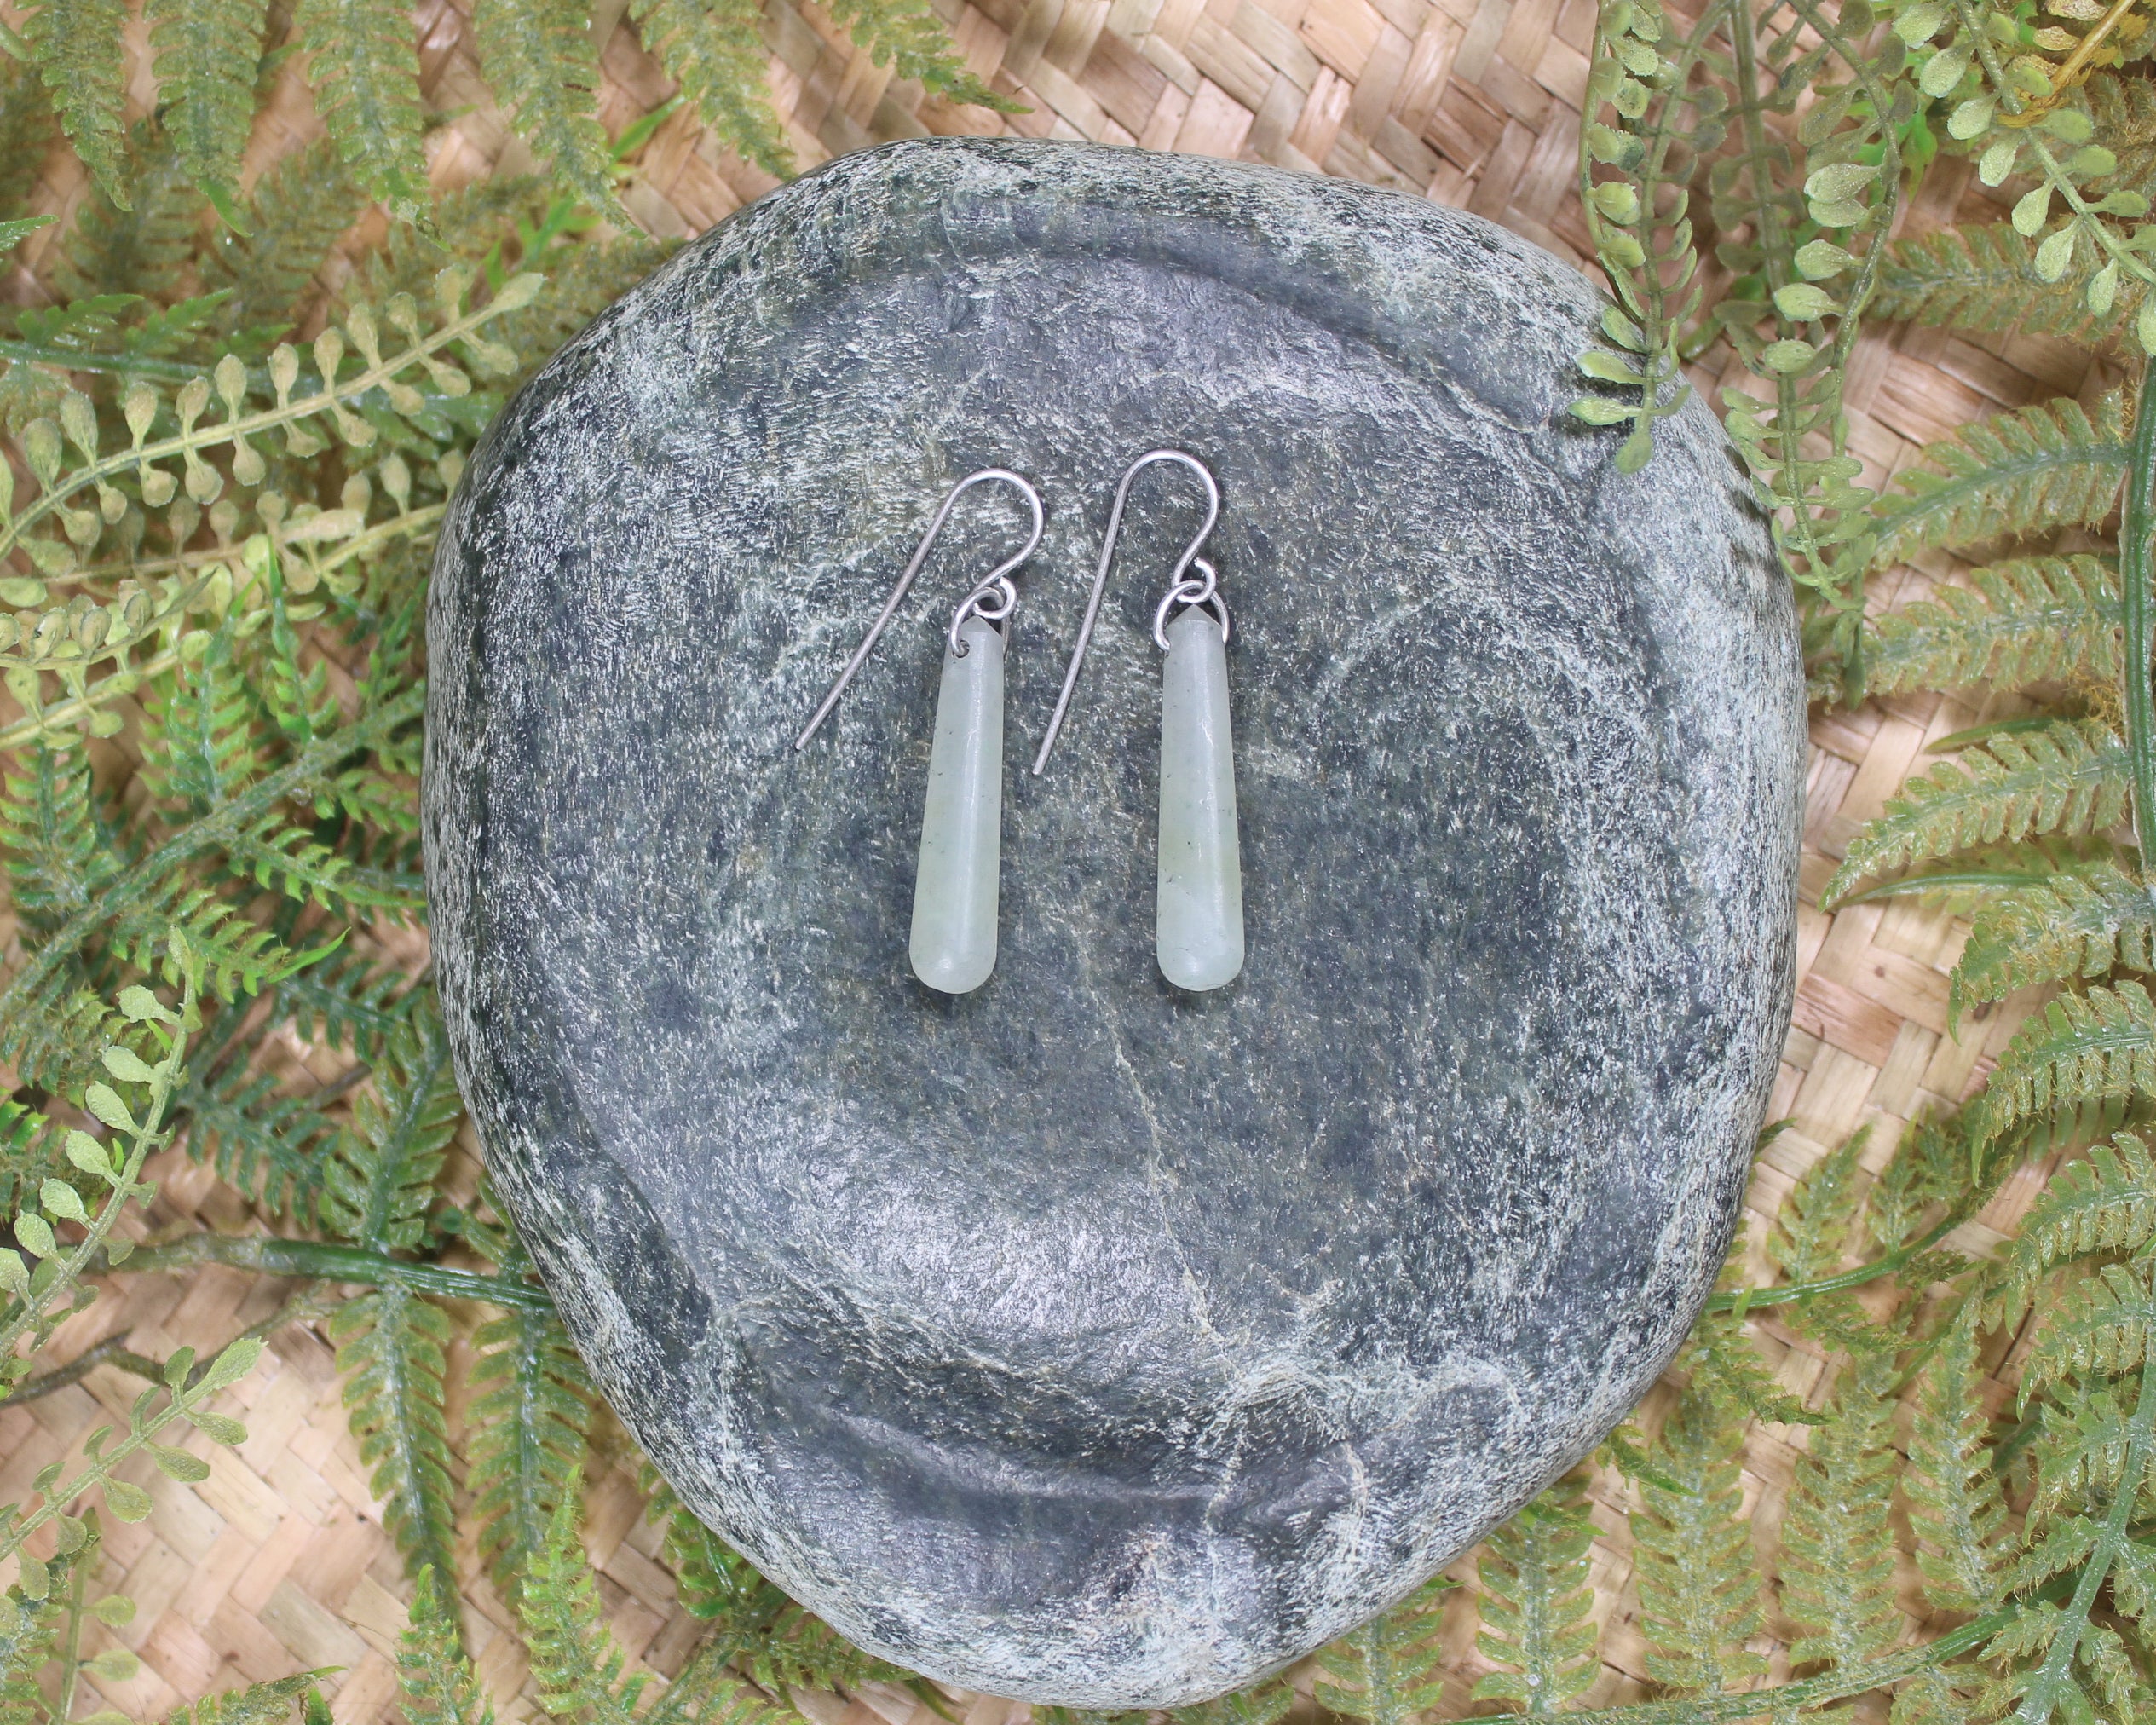 Roimata earrings carved from Grossular Garnet